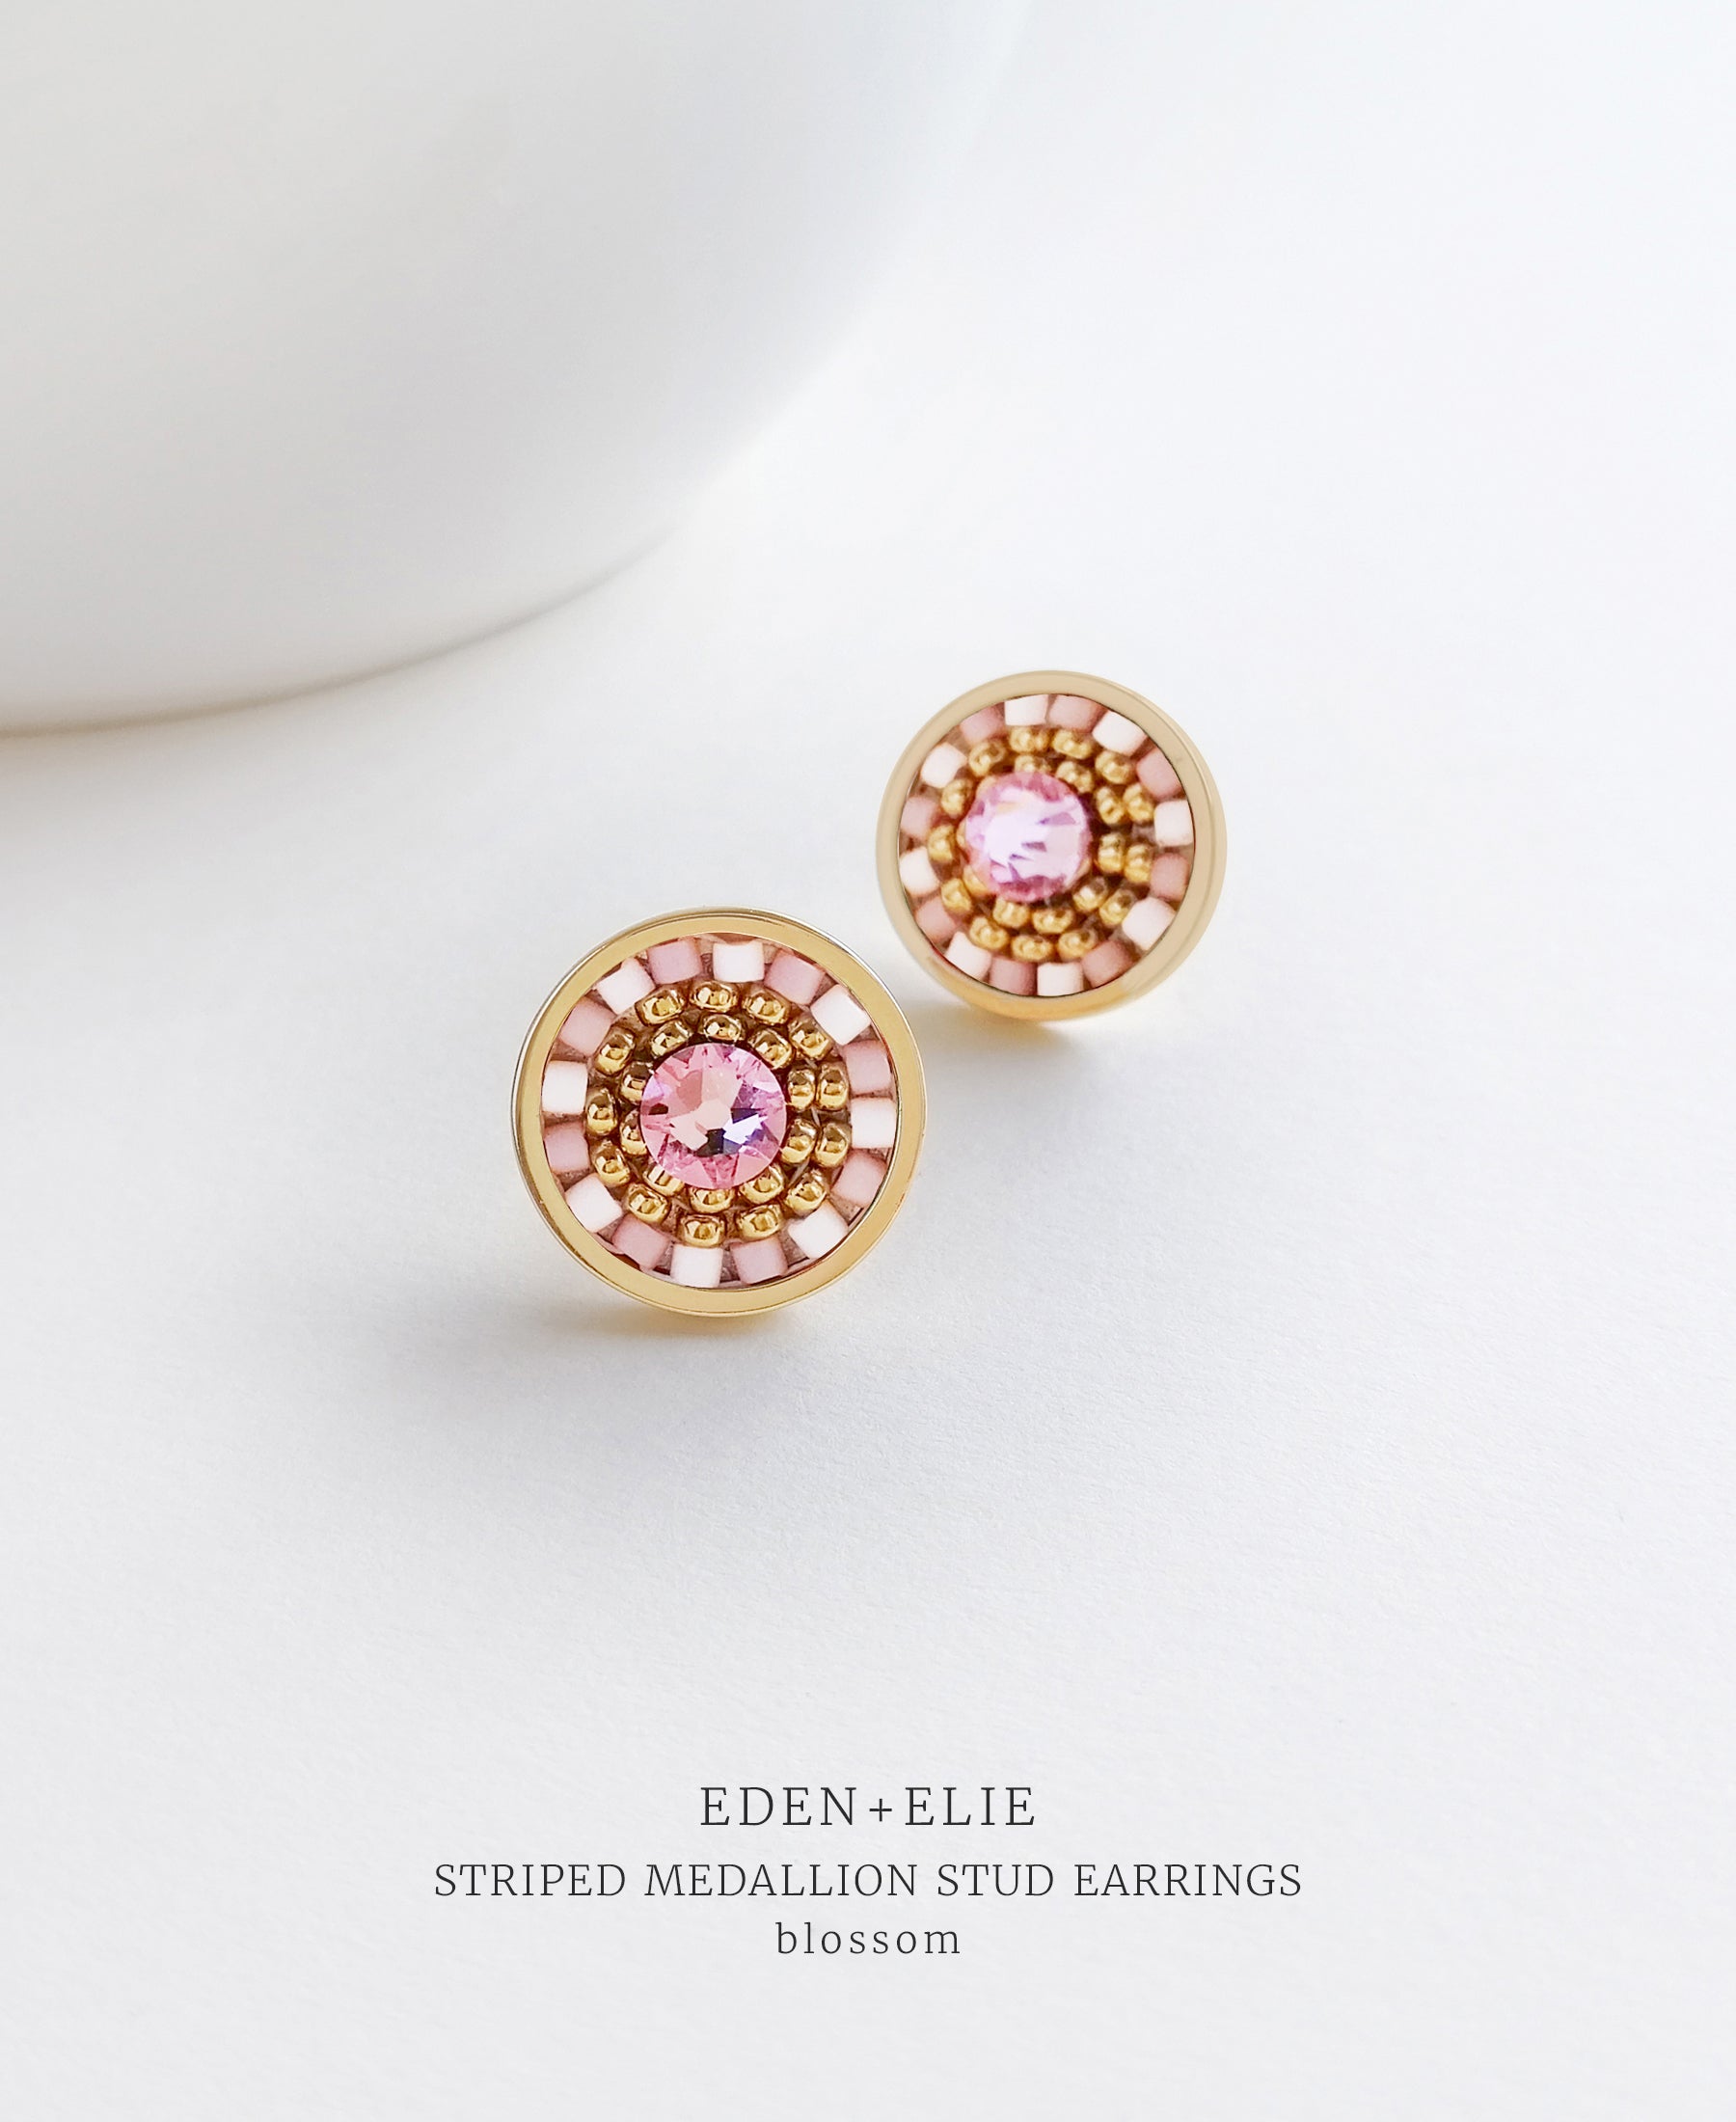 EDEN + ELIE Striped Medallion stud earrings - blossom